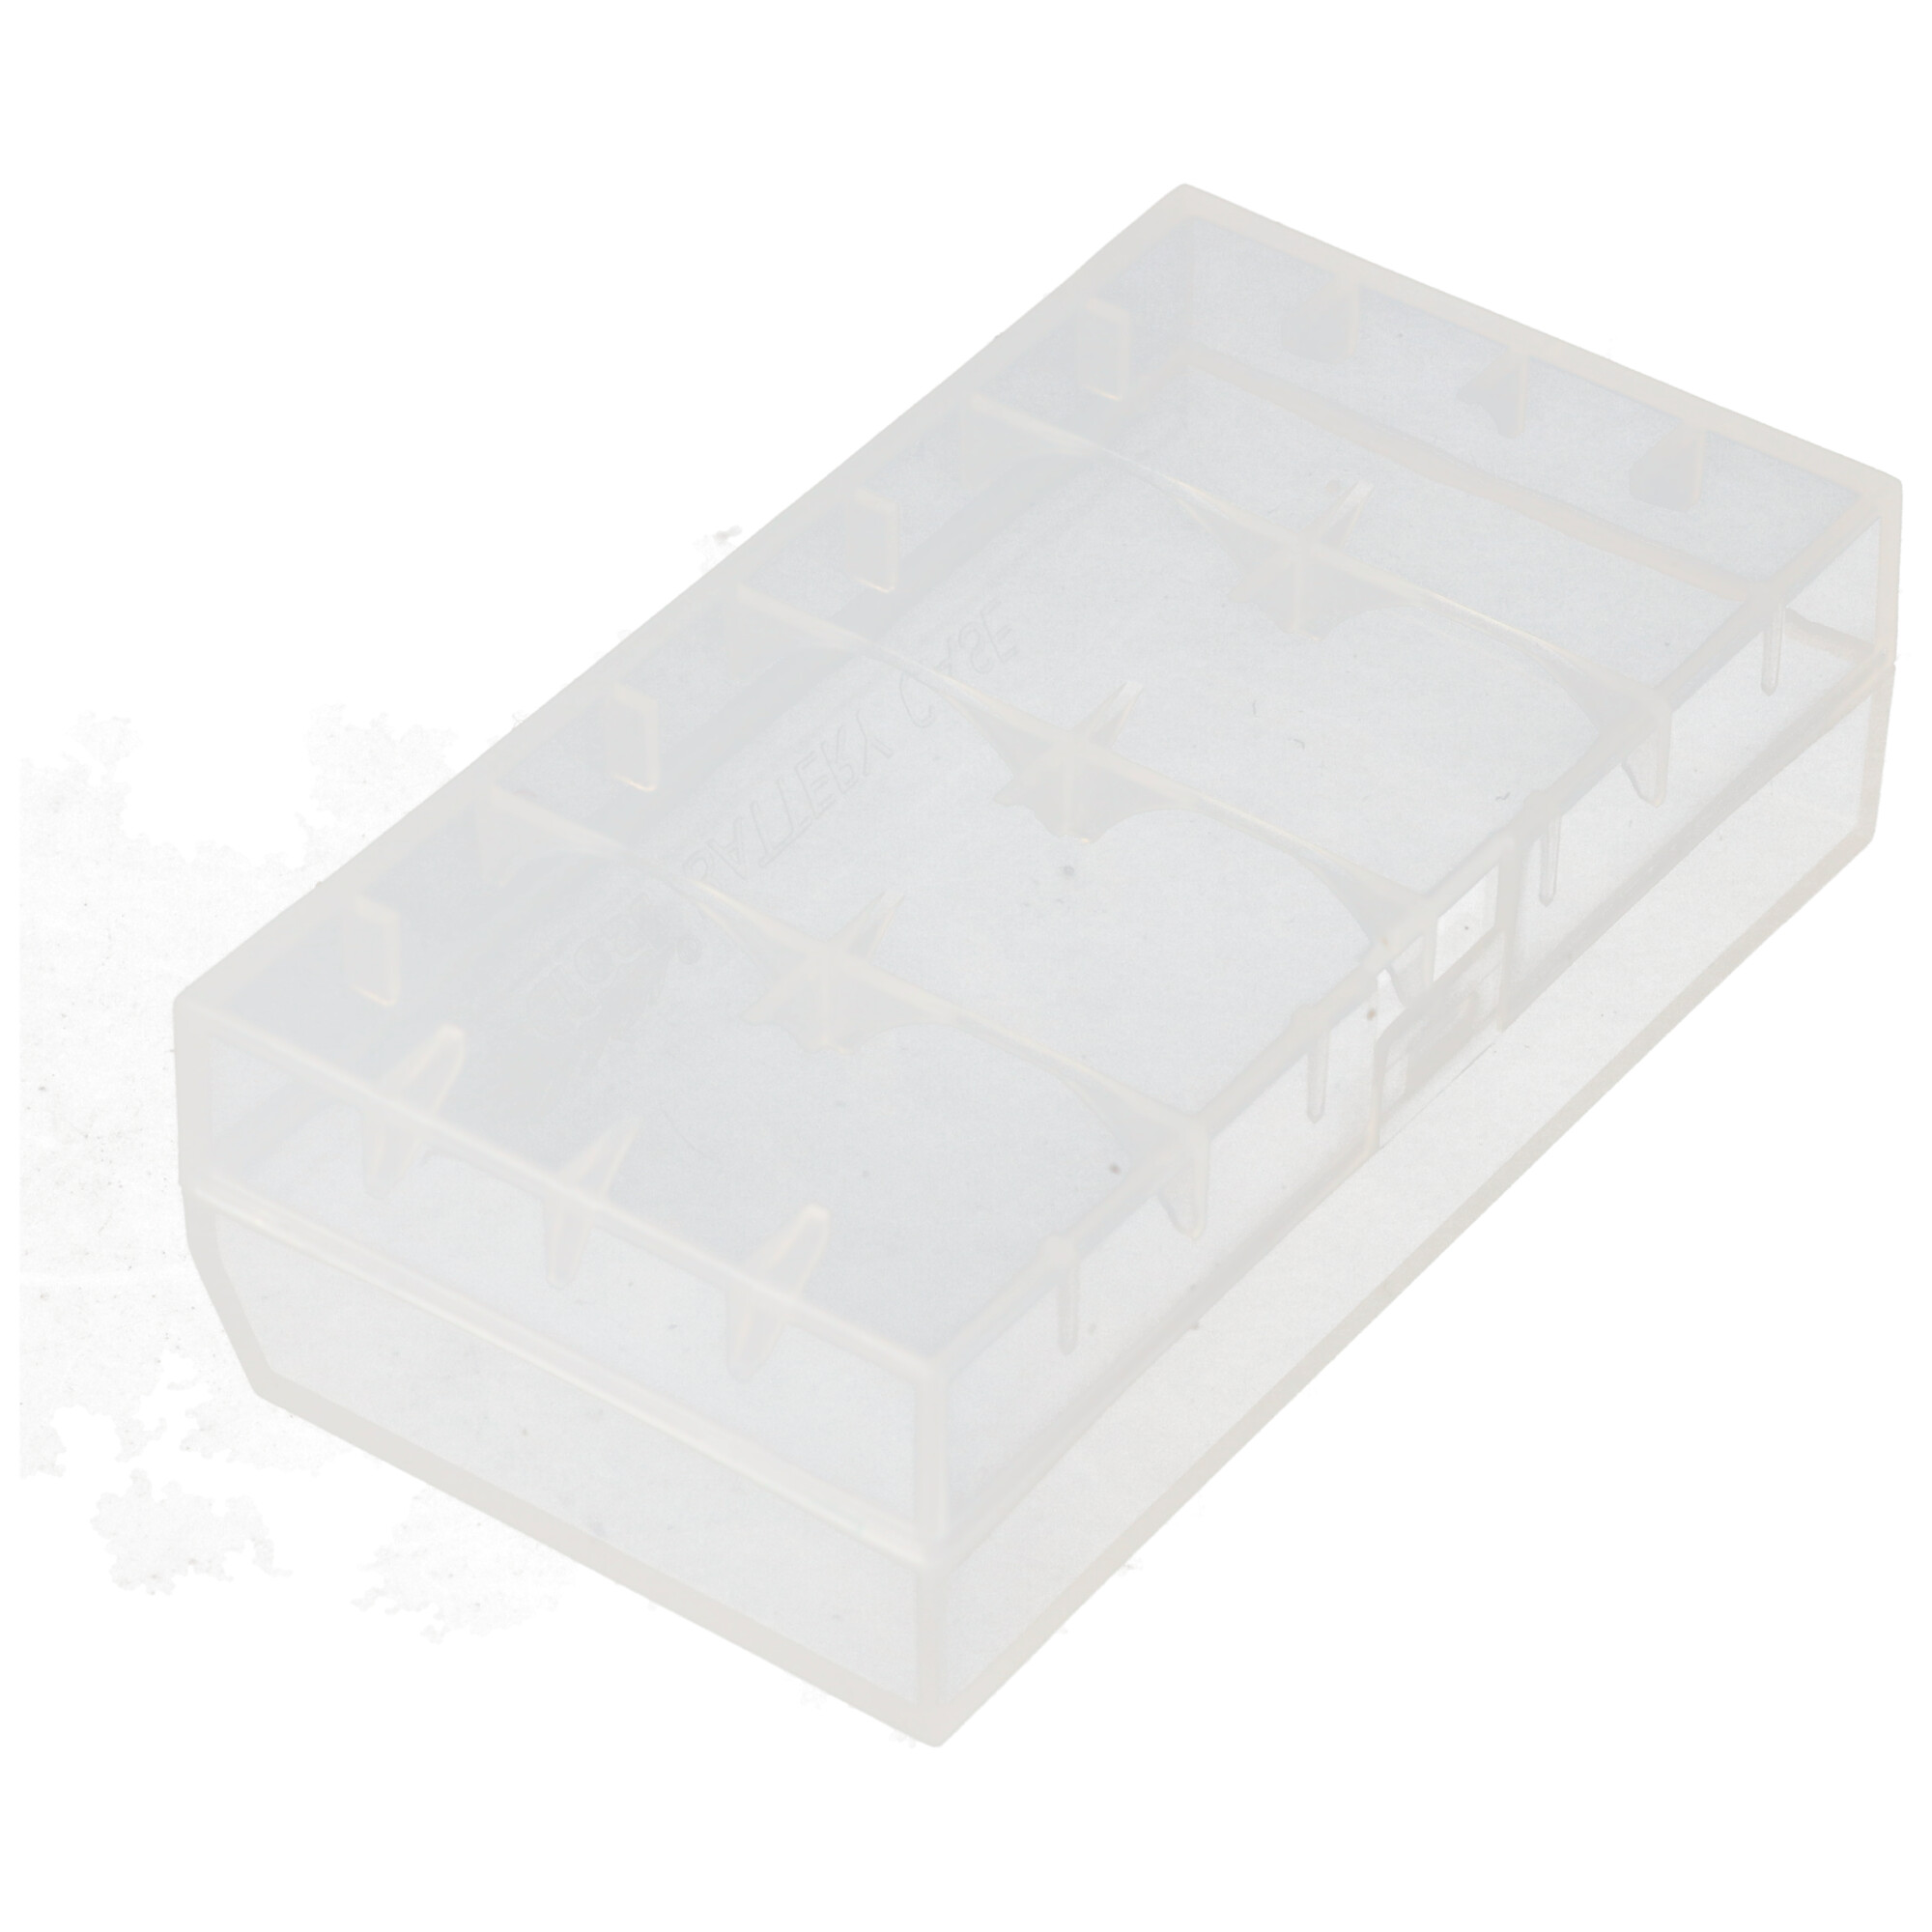 Efest H2 - Plastikbox für 2x 18650 oder 4x 16340